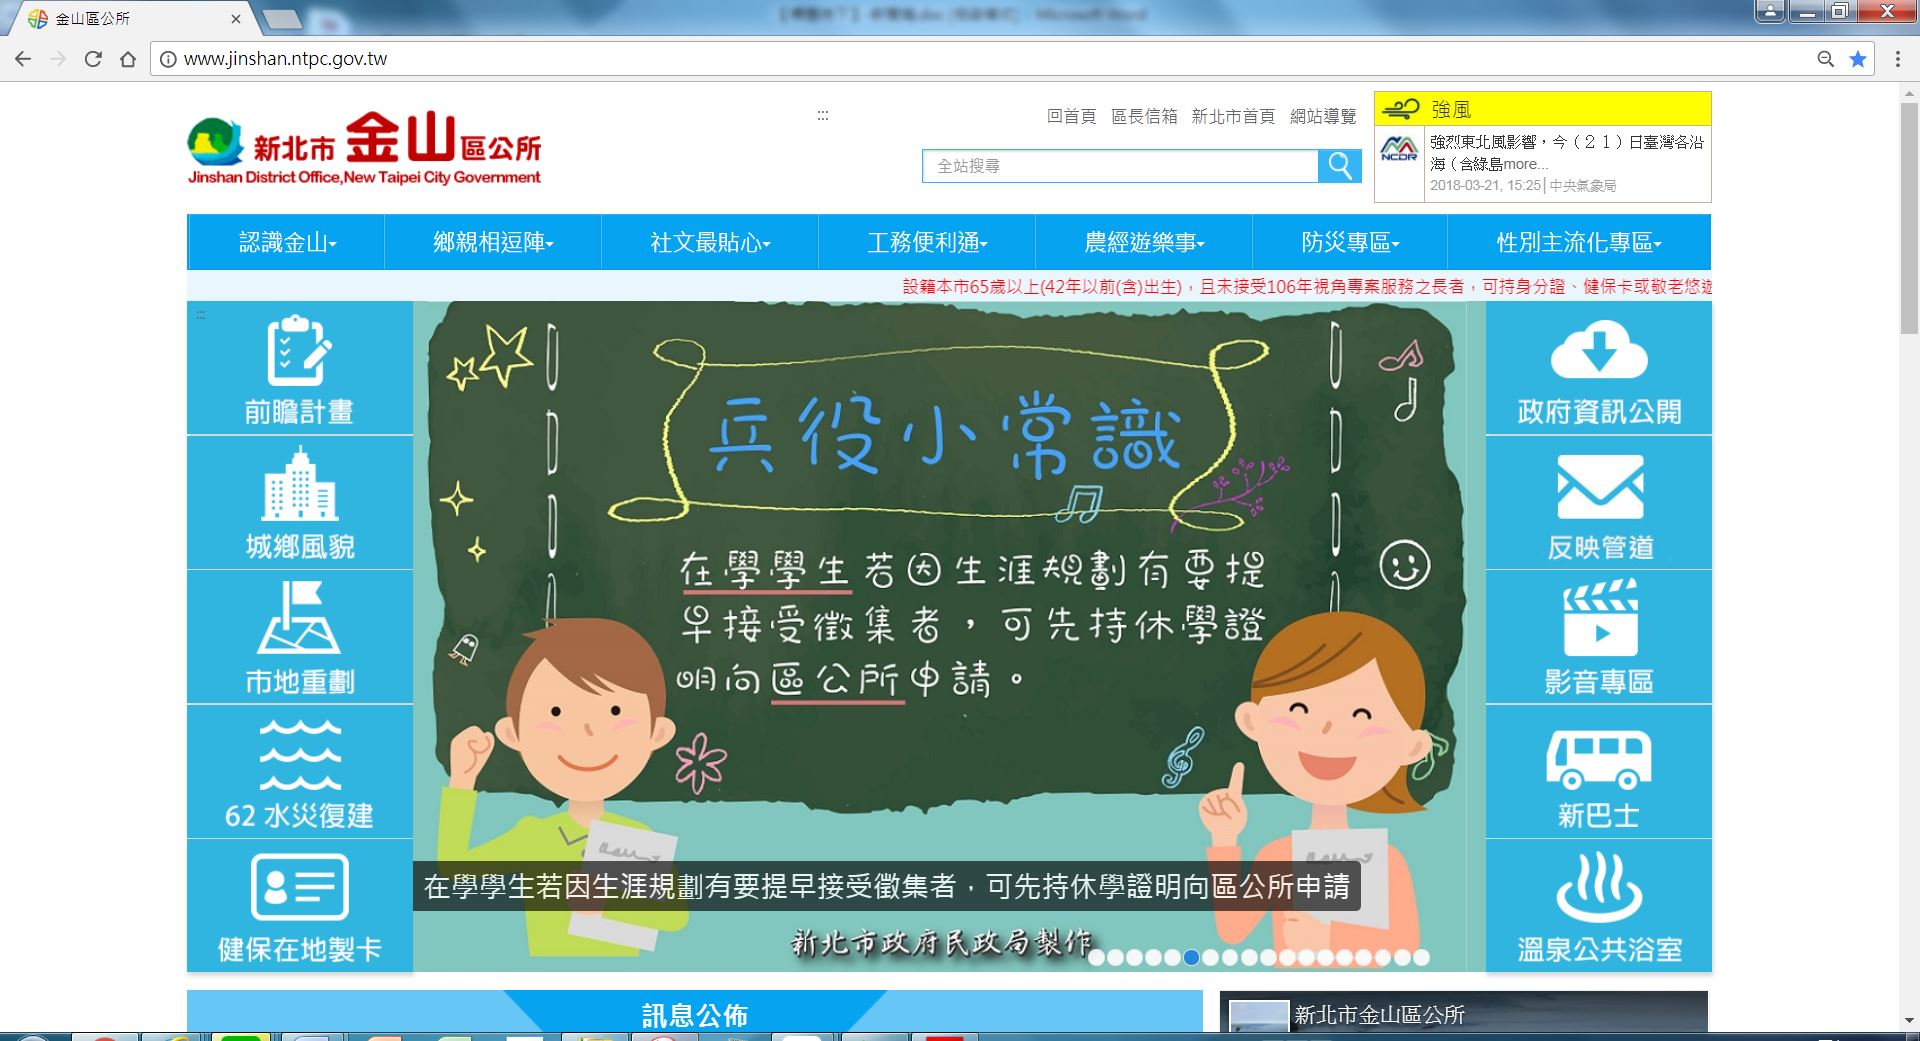 嶄新網站首頁，大圖廣宣提供最新活動及政策資訊